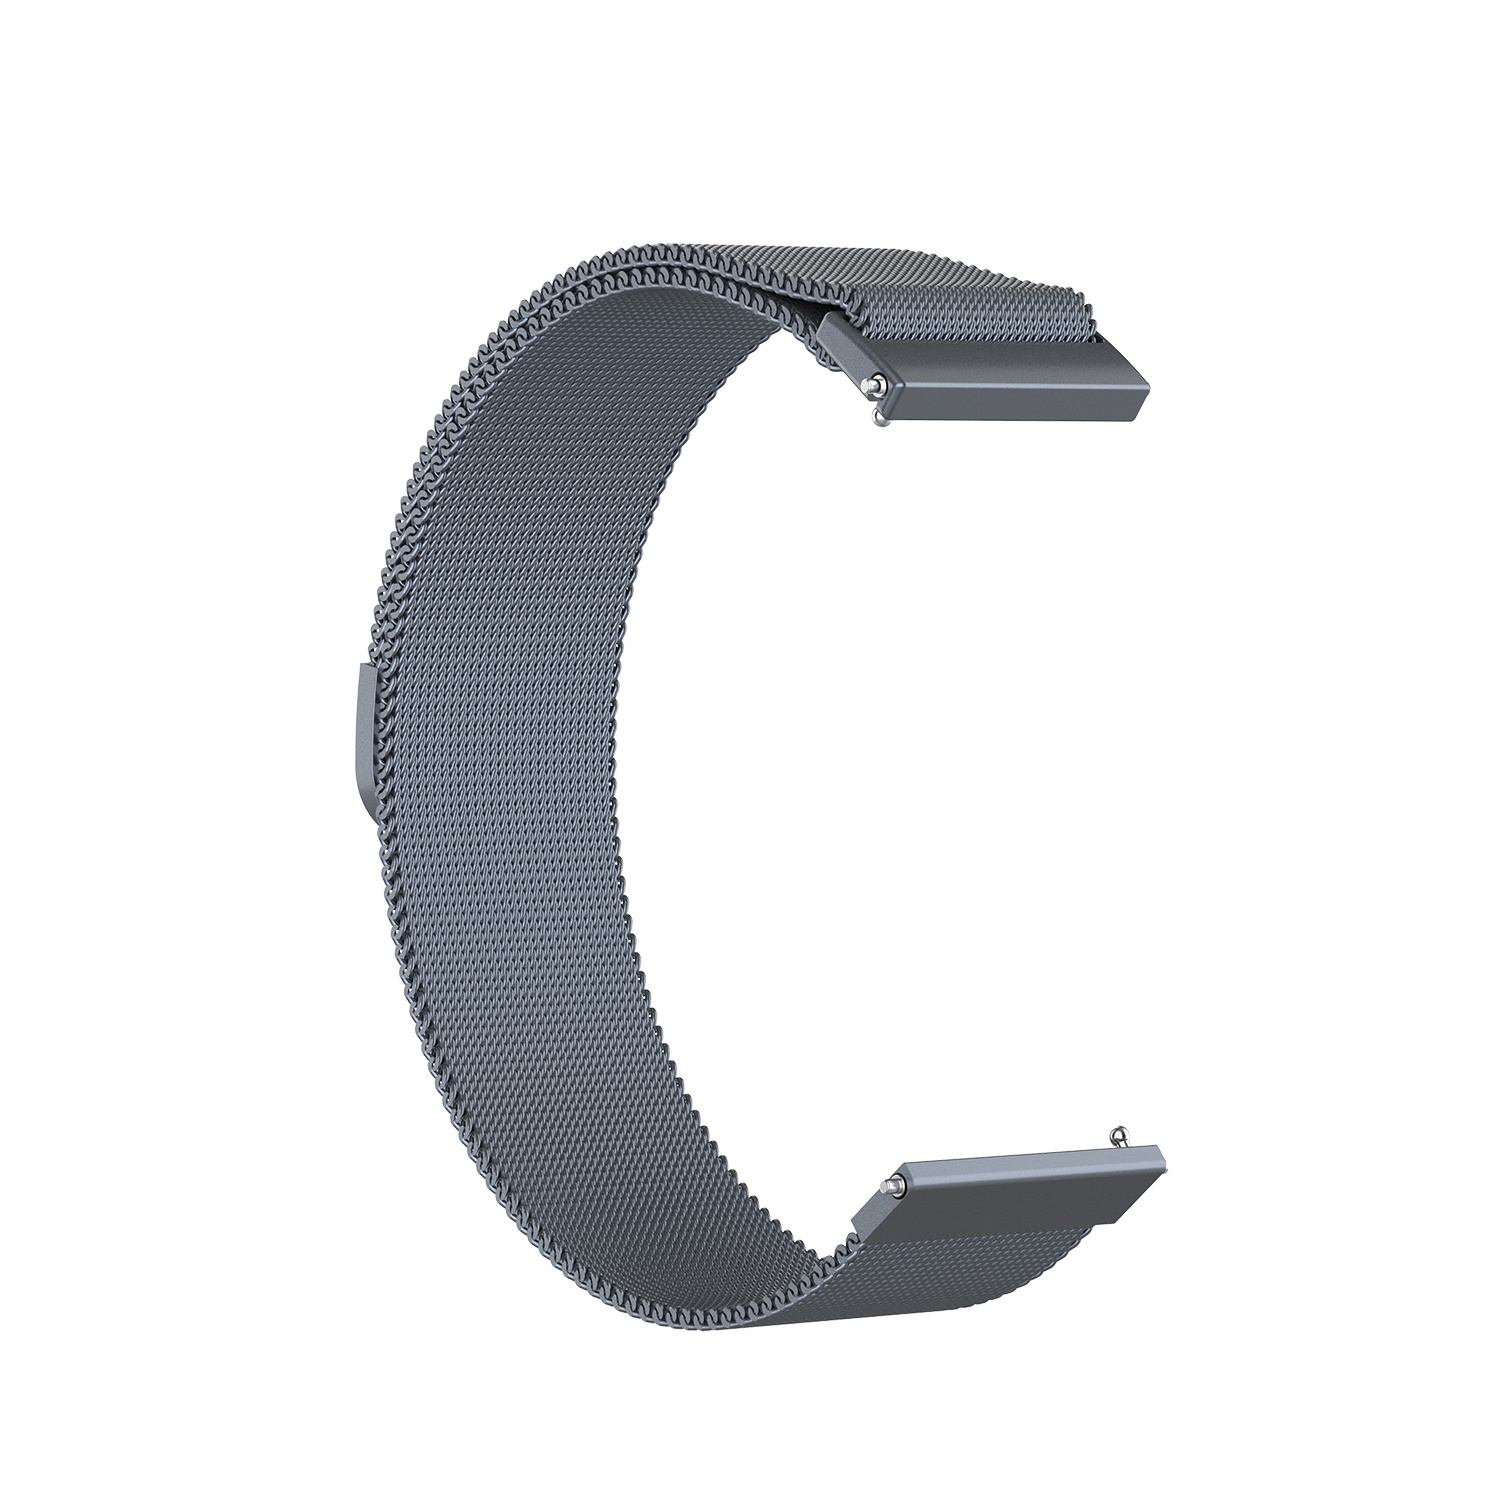 Correa Milanese loop para el Huawei Watch GT - gris espacial